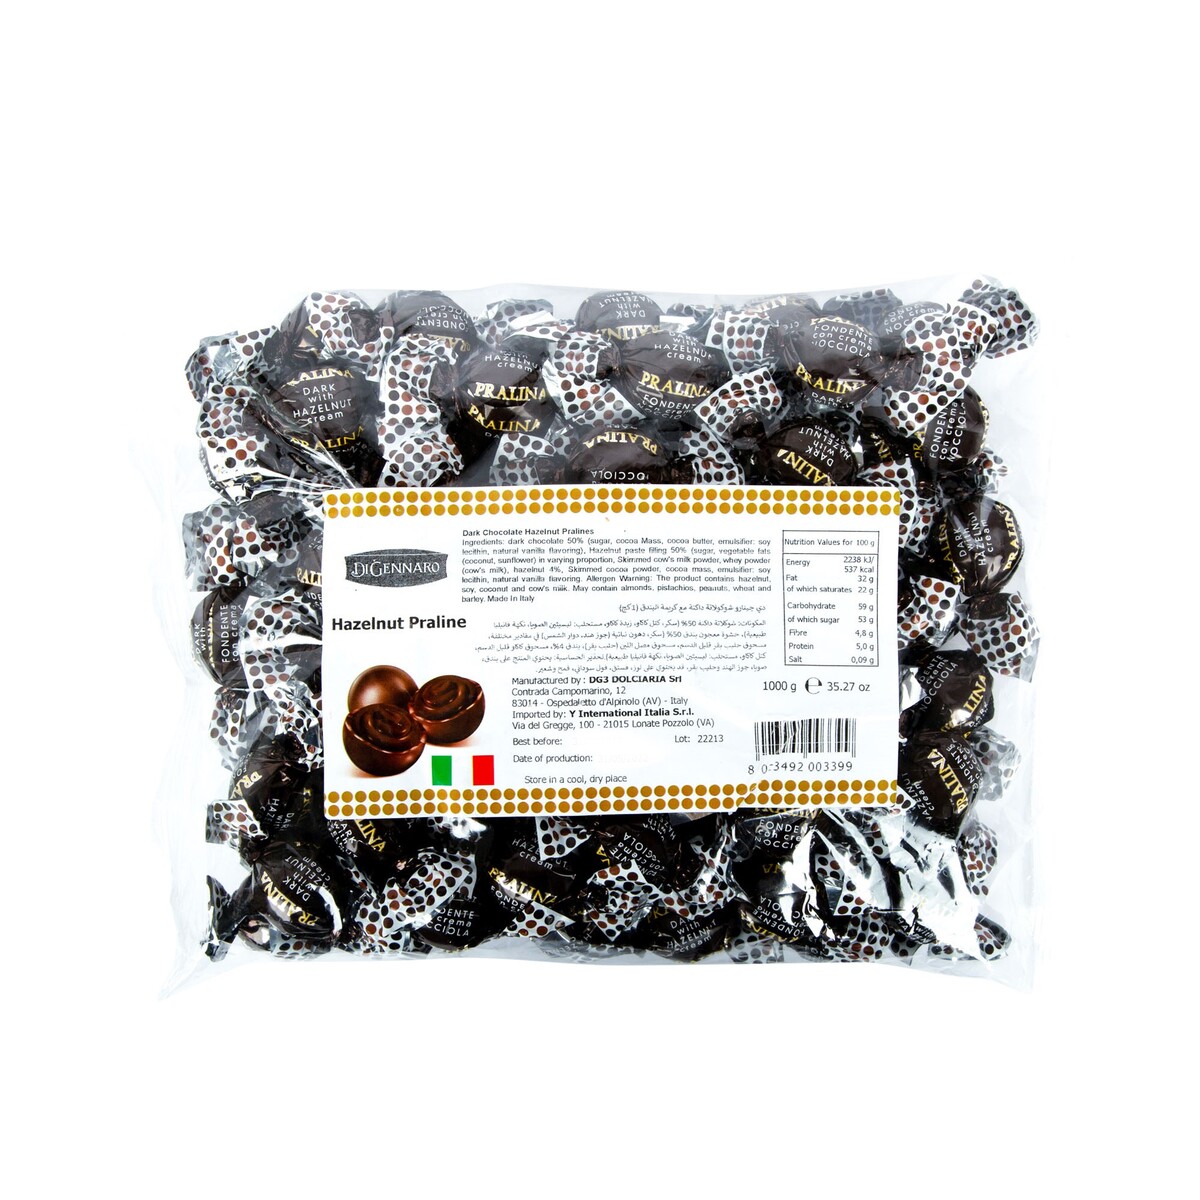 Di Gennaro Dark Chocolate Hazelnut Pralines 1 kg